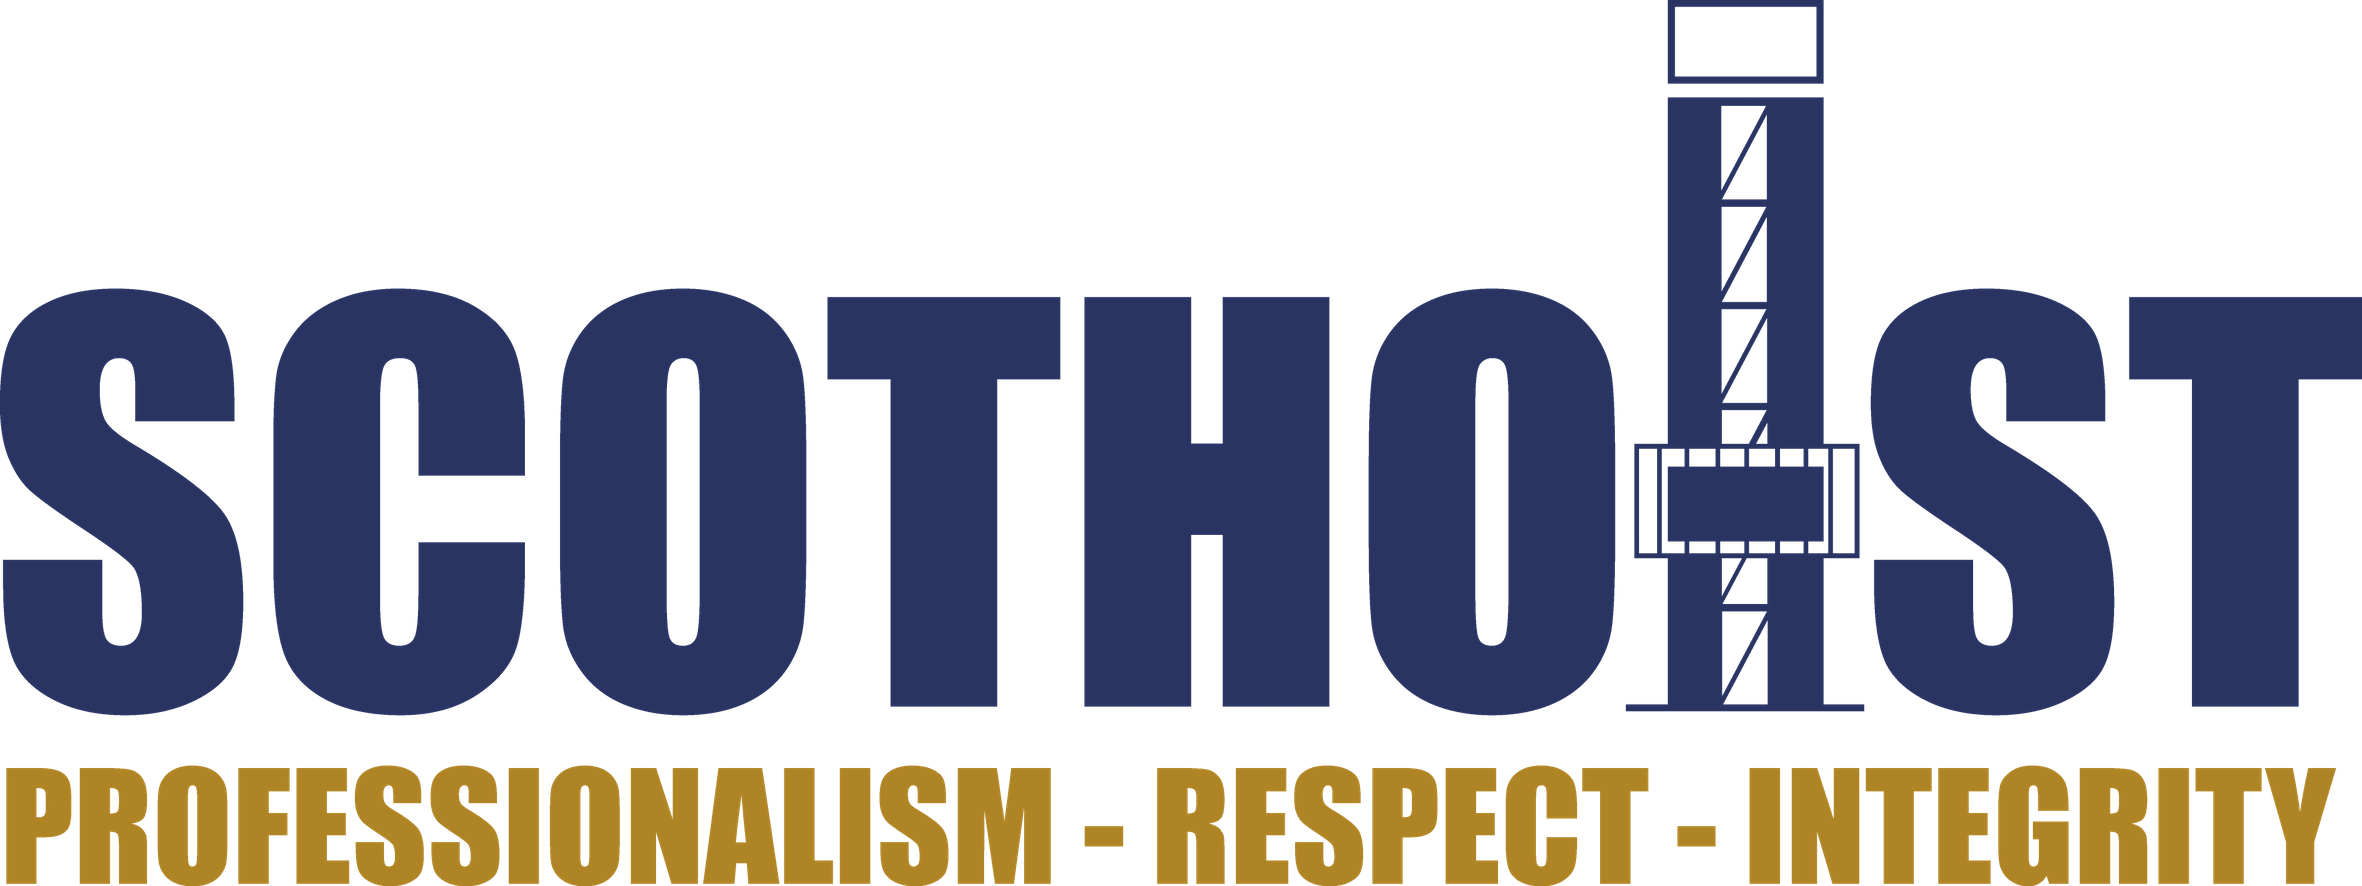 logo for Scot Hoist Ltd